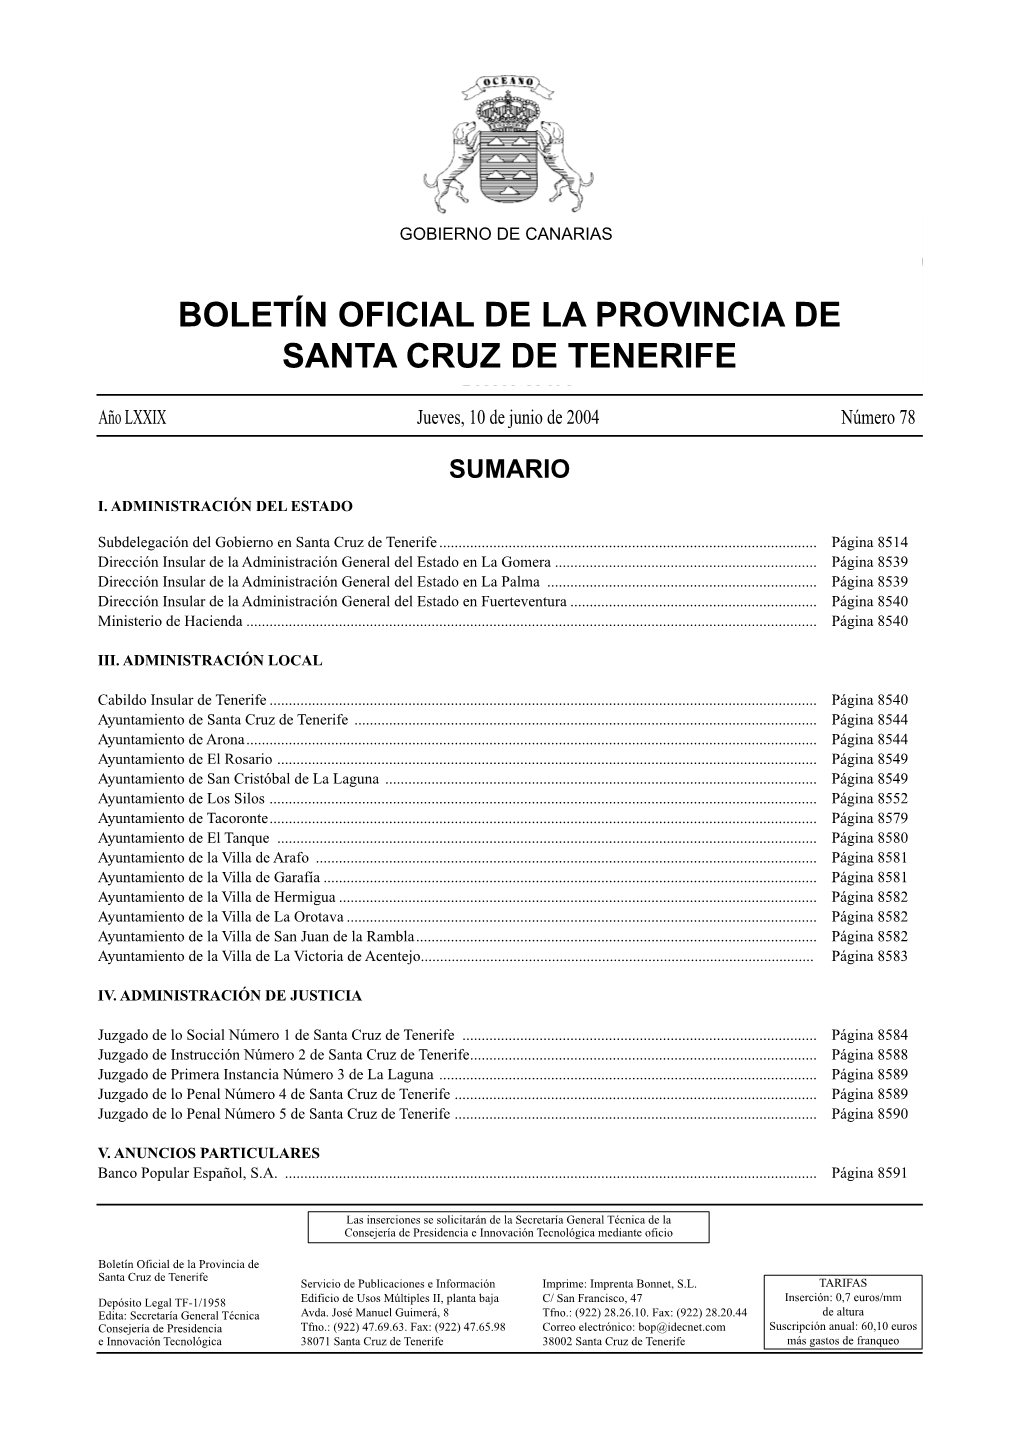 Boletín Oficial De La Provincia De Santa Cruz De Tenerife Servicio De Publicaciones E Información Imprime: Imprenta Bonnet, S.L